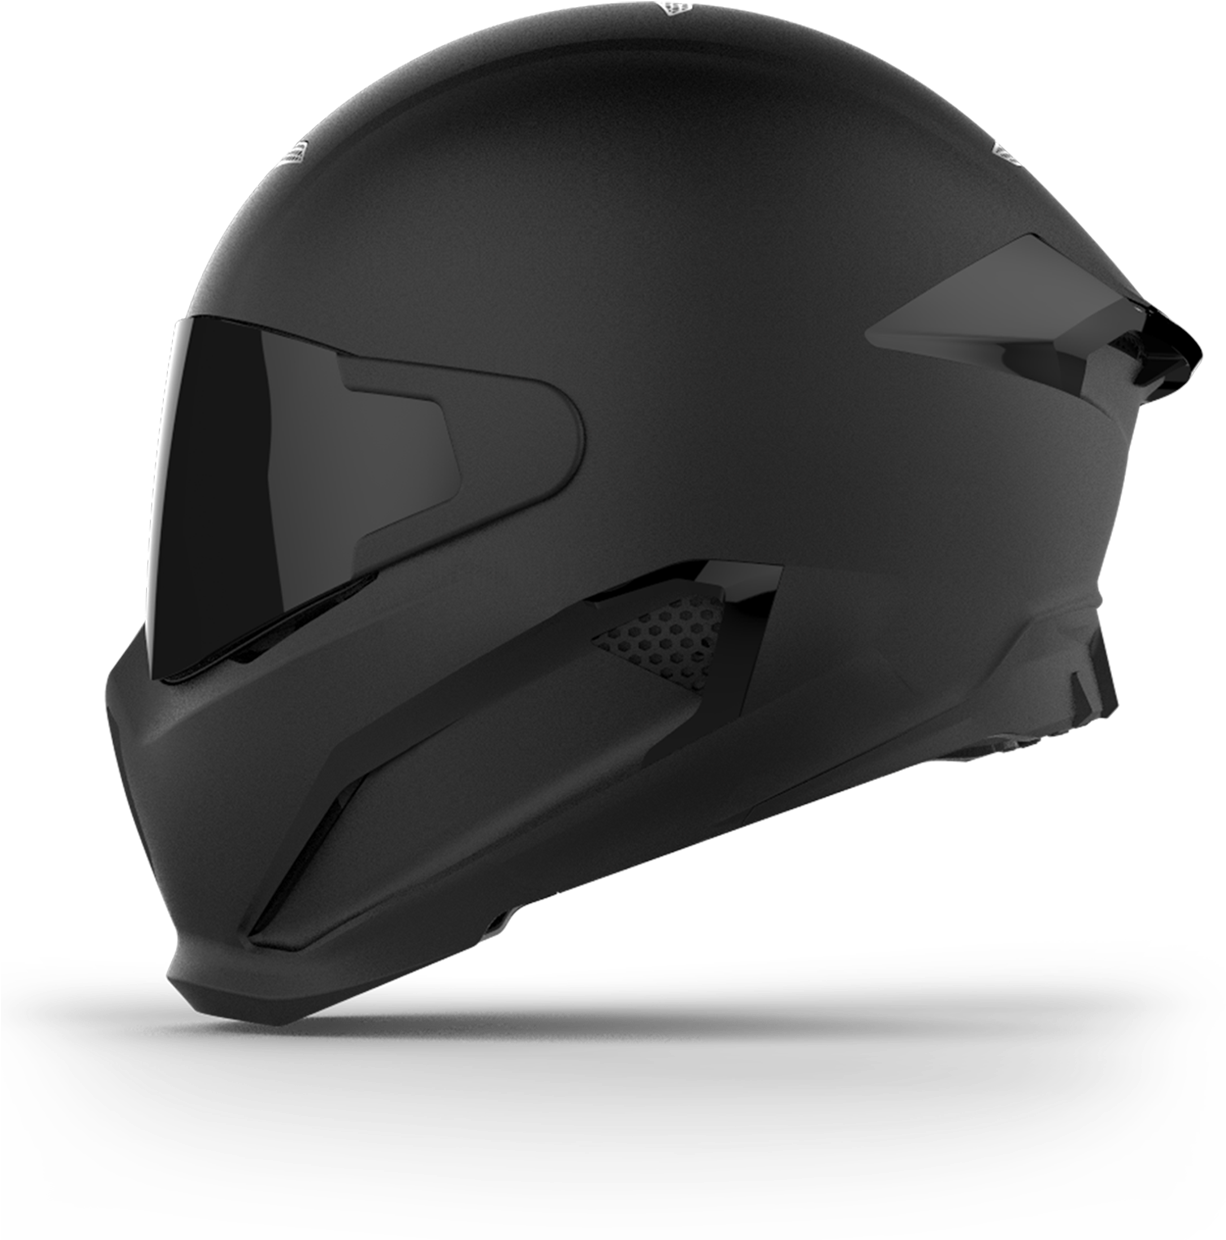 Daft Punk Helmet For Sale Singapore - Motorcycle Helmet (1225x1268), Png Download